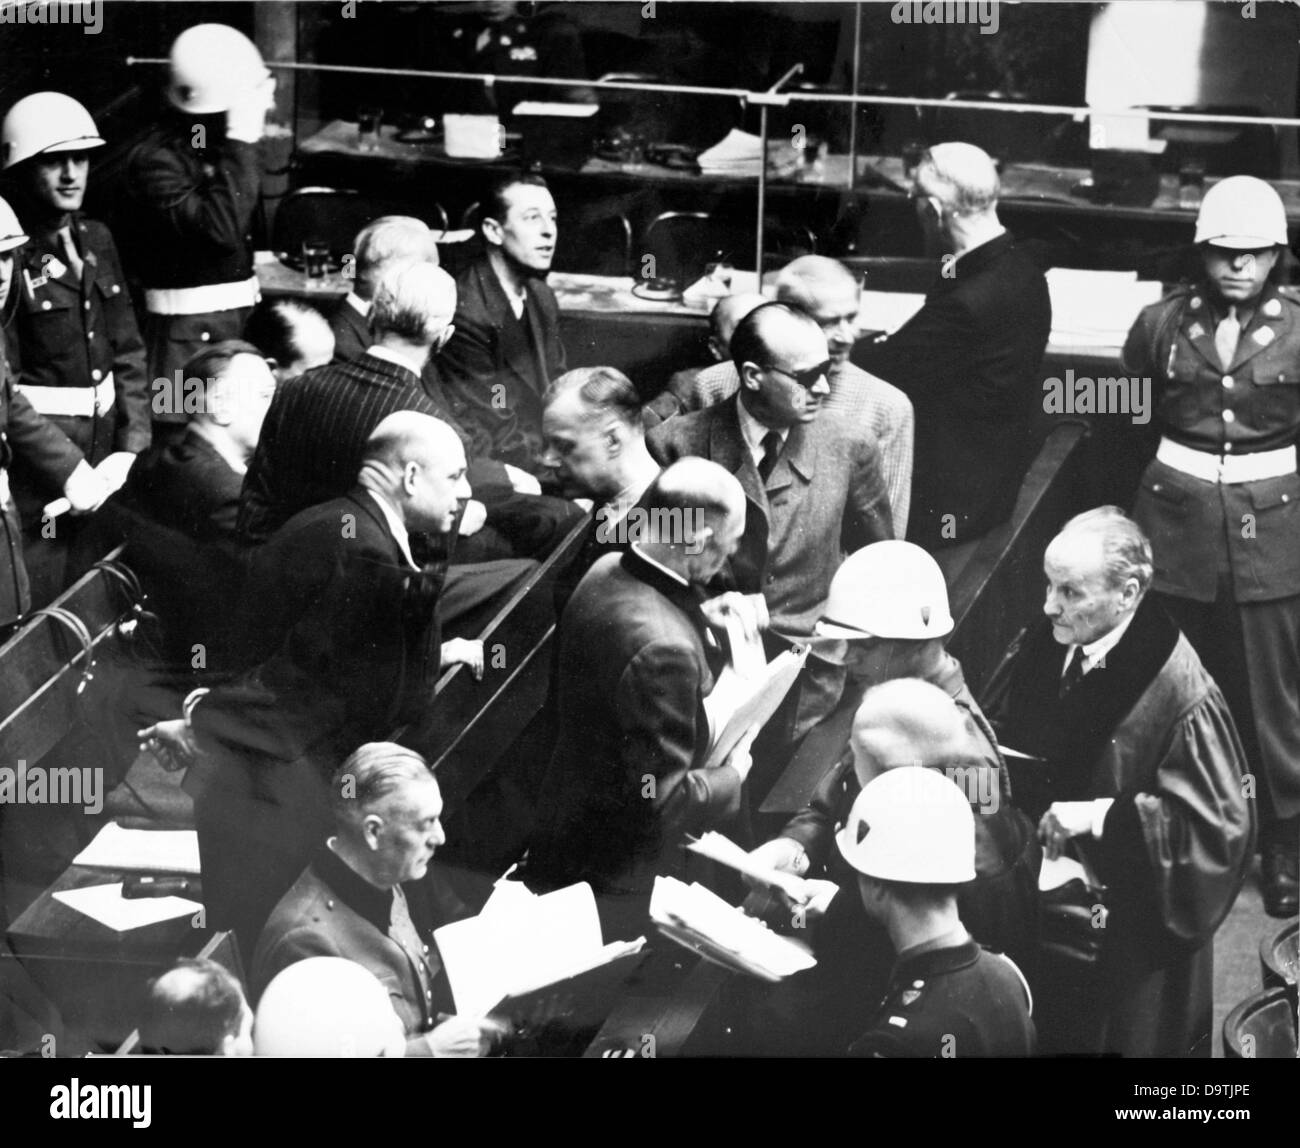 Militärpolizei sind um die Bank die ersten Angeklagten im Nürnberger Prozess im Kontext des Internationalen Militärgerichtshofs gegen die großen Kriegsverbrecher des zweiten Weltkriegs in Nürnberg, 1946 abgebildet. Foto: Jewgeni Chaldei Stockfoto